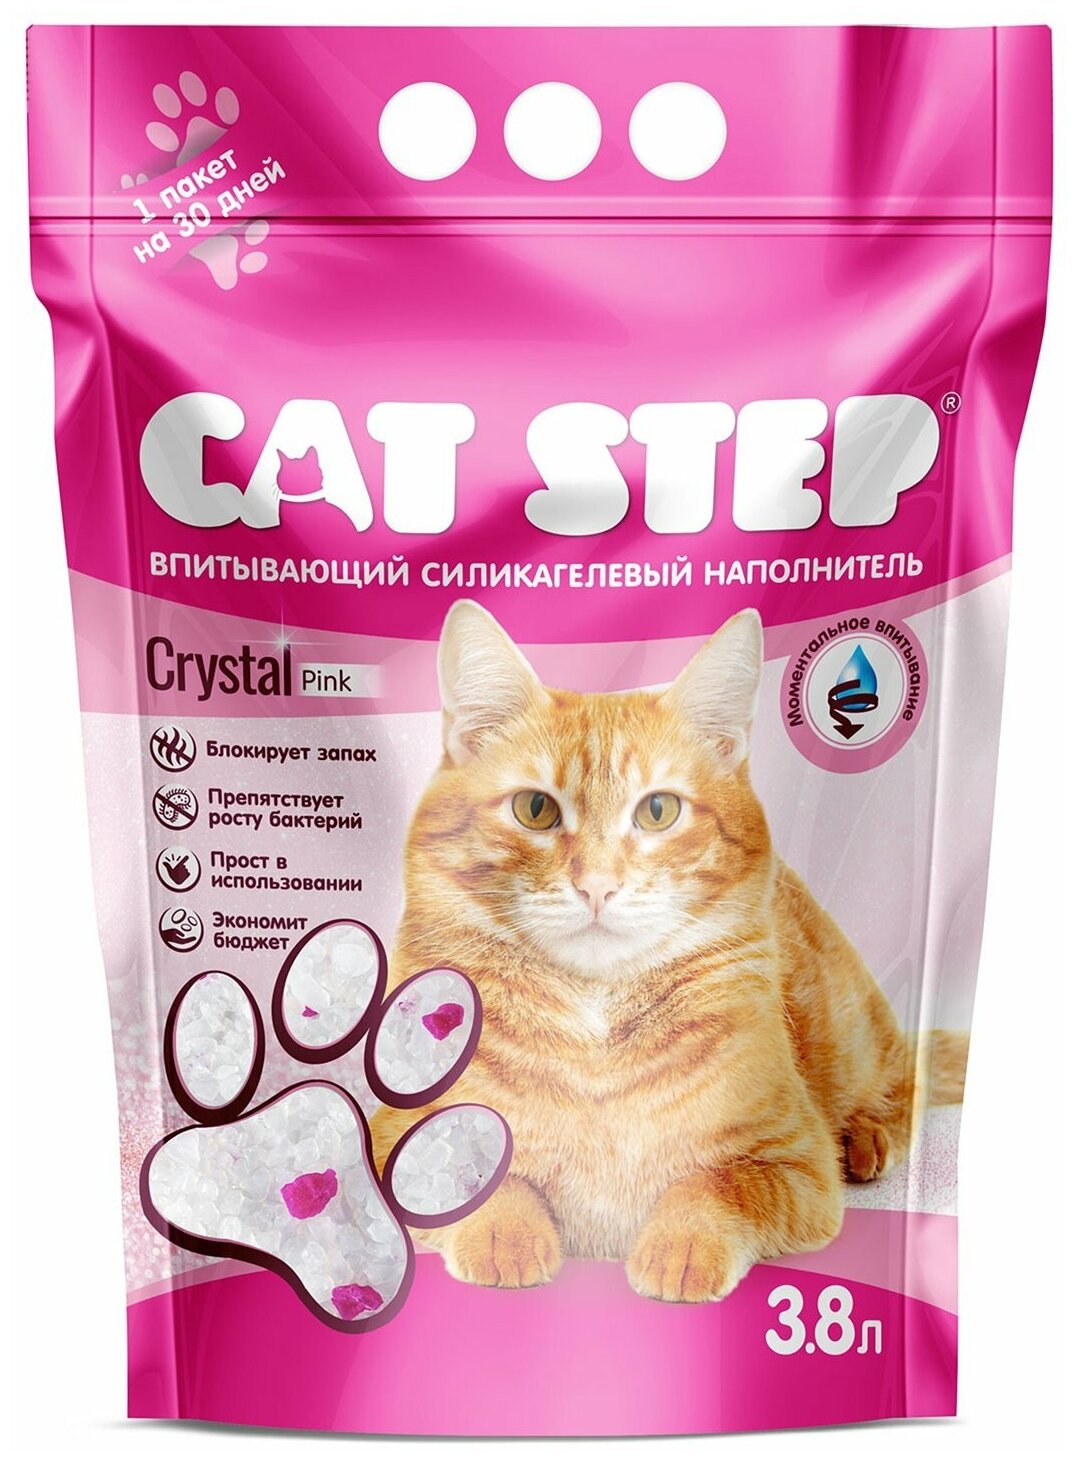 Наполнитель впитывающий силикагелевый CAT STEP Arctic Pink, 3,8 л - фотография № 1